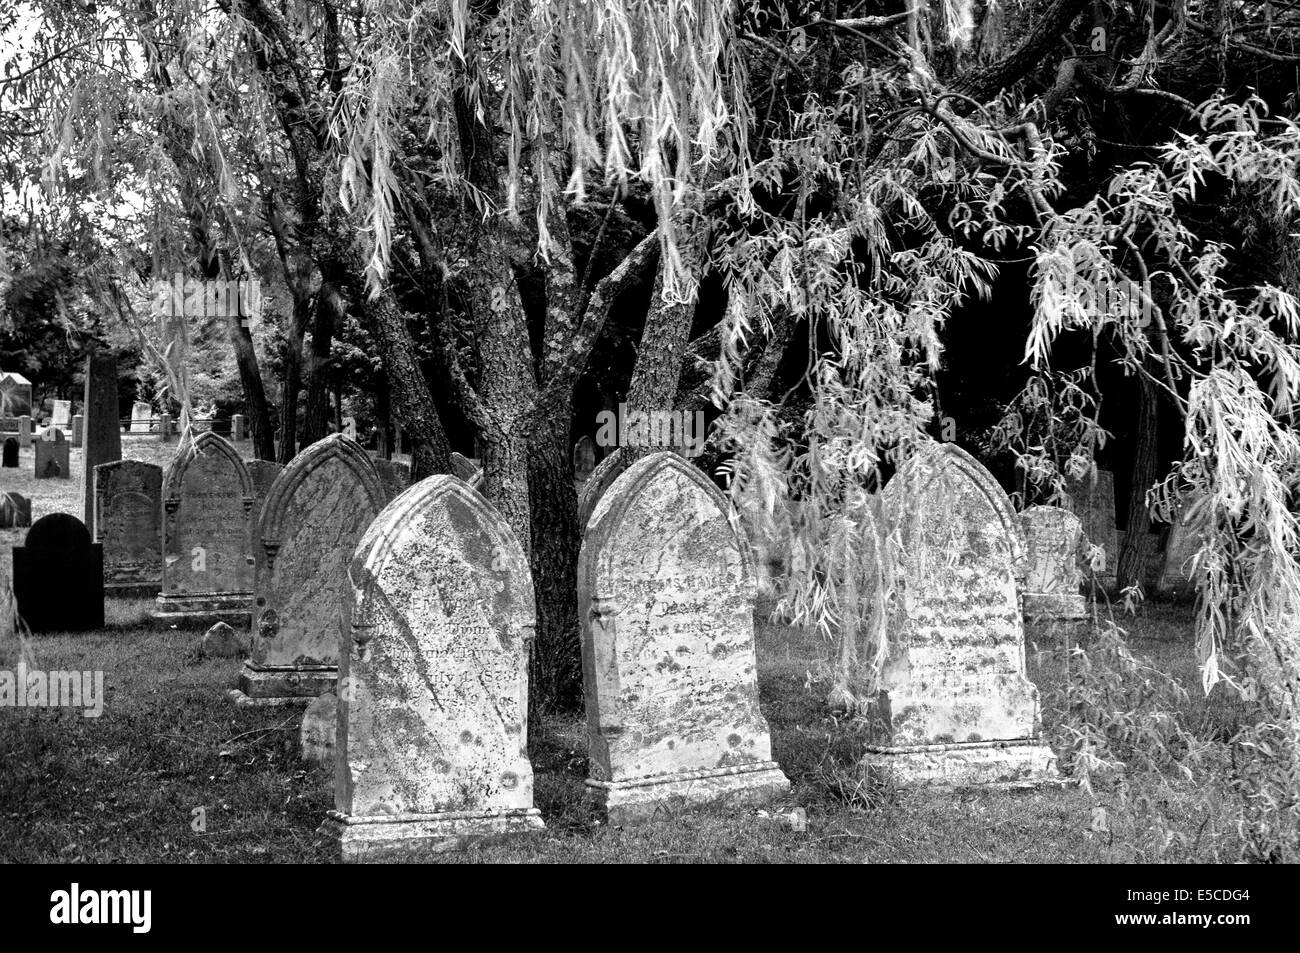 Alte Grabsteine aus den 1800er Jahren finden sich auf diesem Friedhof in Cape Cod, Massachusetts (MA), USA. B&W Bild. Stockfoto